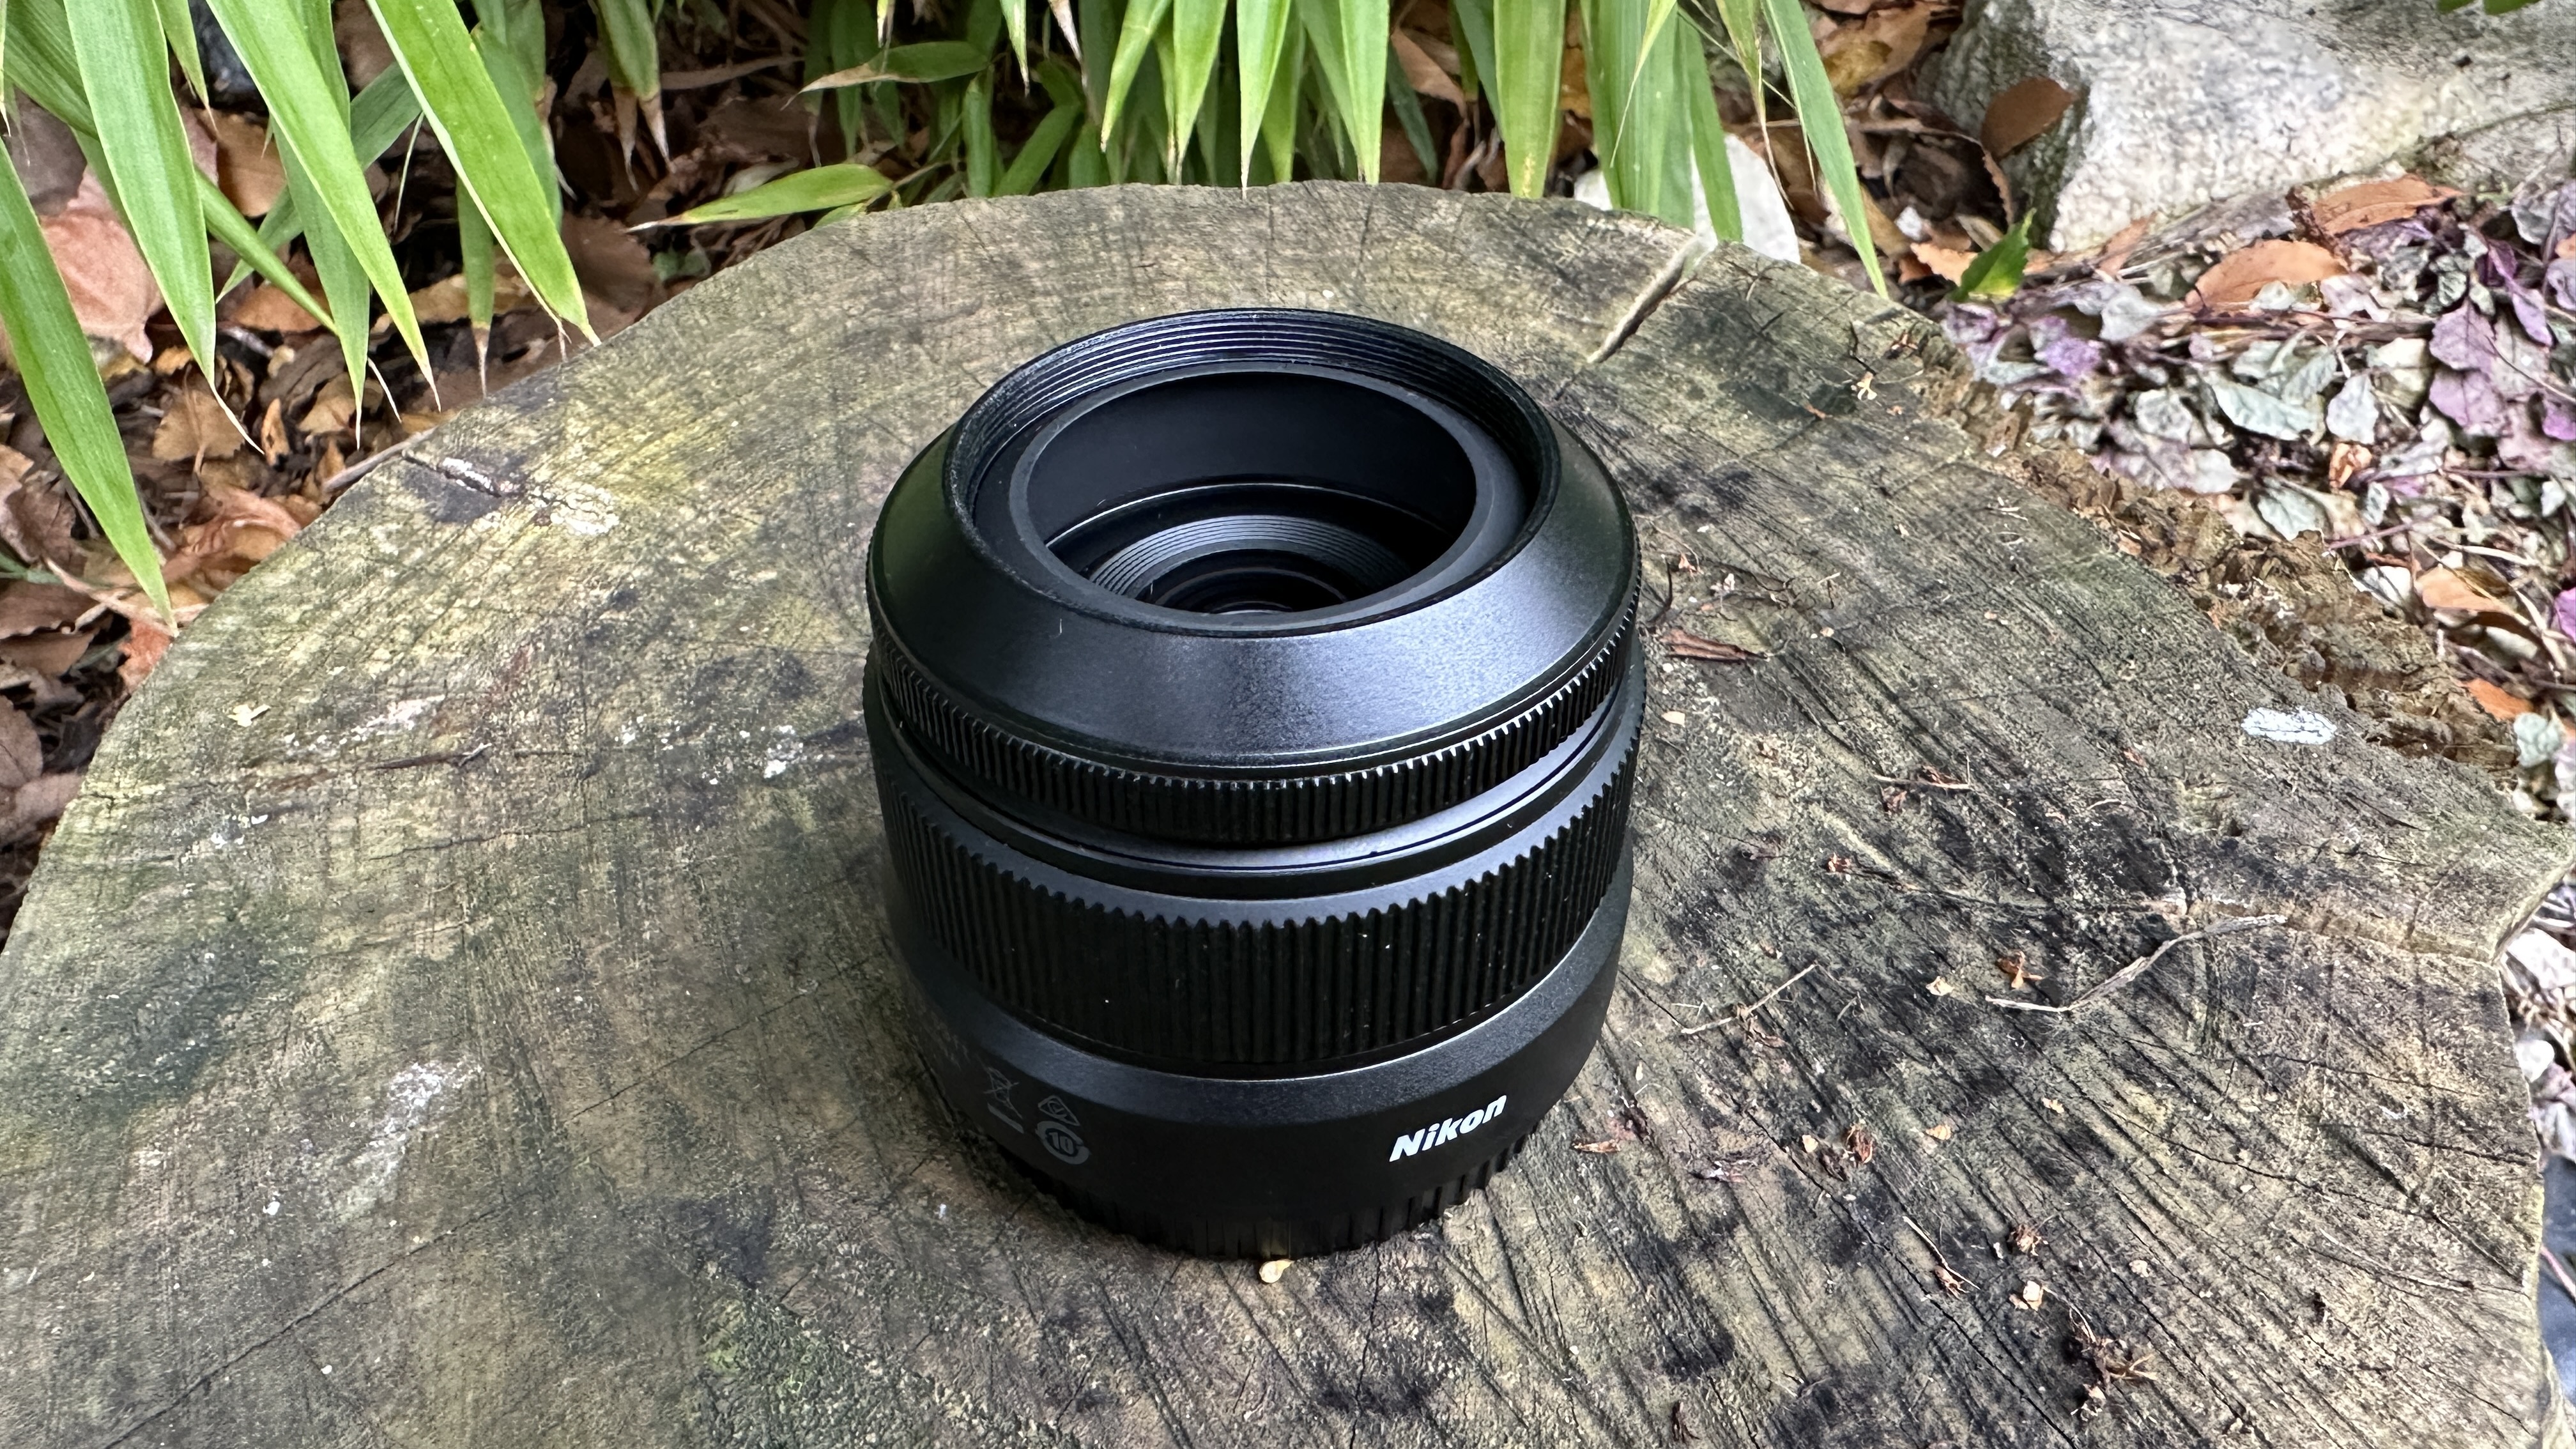 Nikkor Z DX 24mm f/1.7 lens with lens hood set to one side